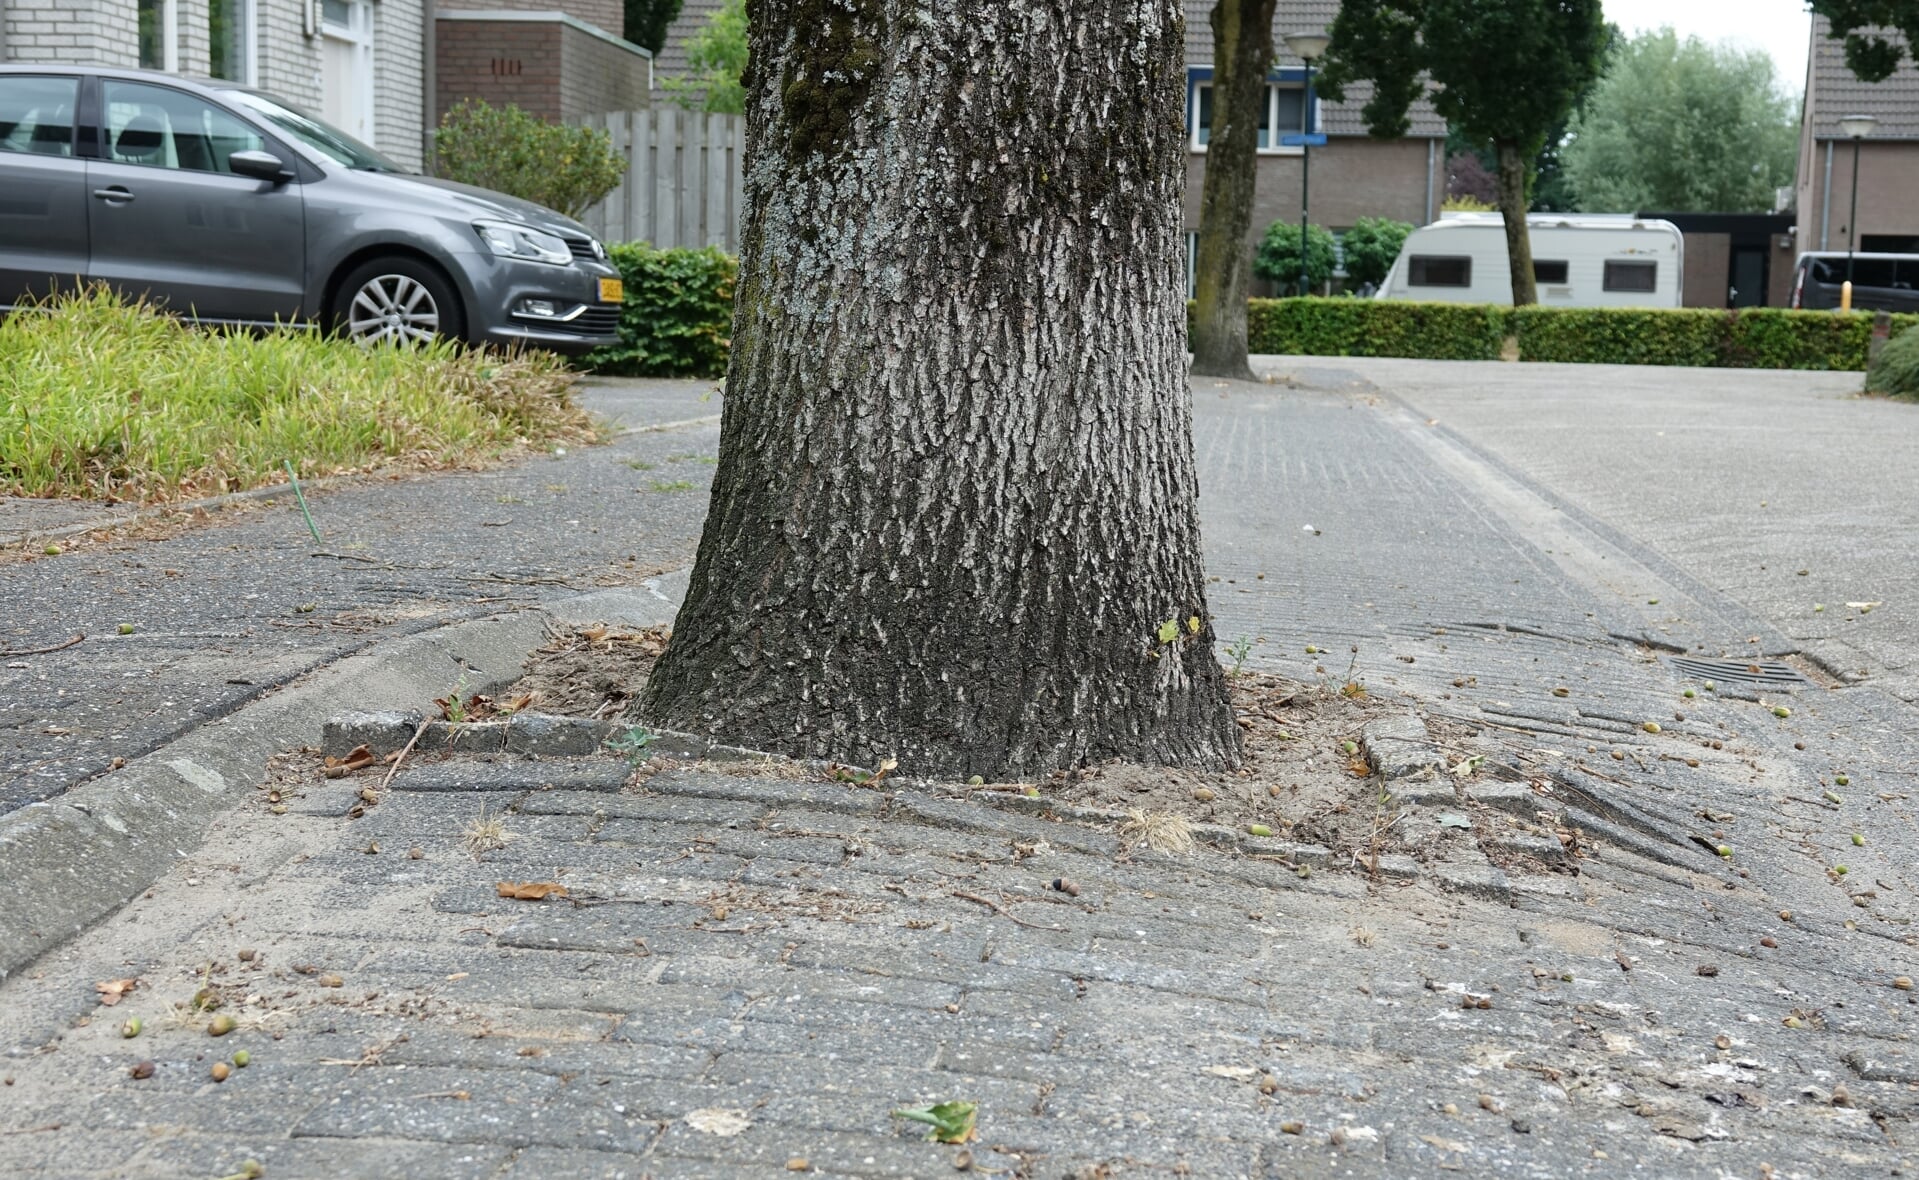 Wortelopdruk en dood hout zijn de hoofdredenen voor de gemeente Boxtel om 57 bomen te koppen in vier Liempdse straten, Krollerbocht, Schietberg, Draaiboom en Heidonk.